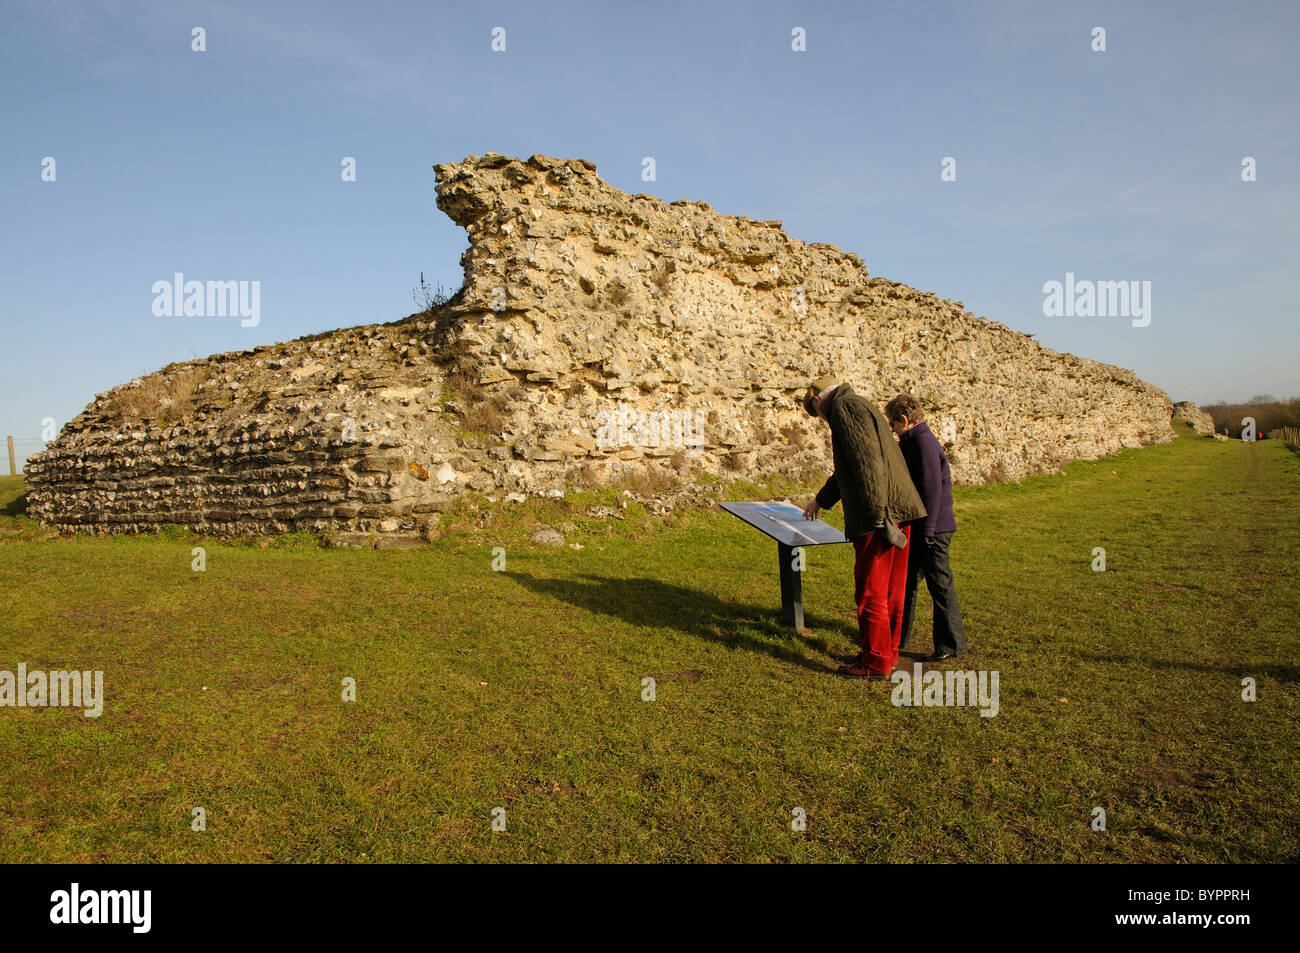 Murs romains au sud de l'Angleterre dans le Hampshire Silchester lecture visiteurs un panneau d'information à l'une des passerelles qui restent Banque D'Images